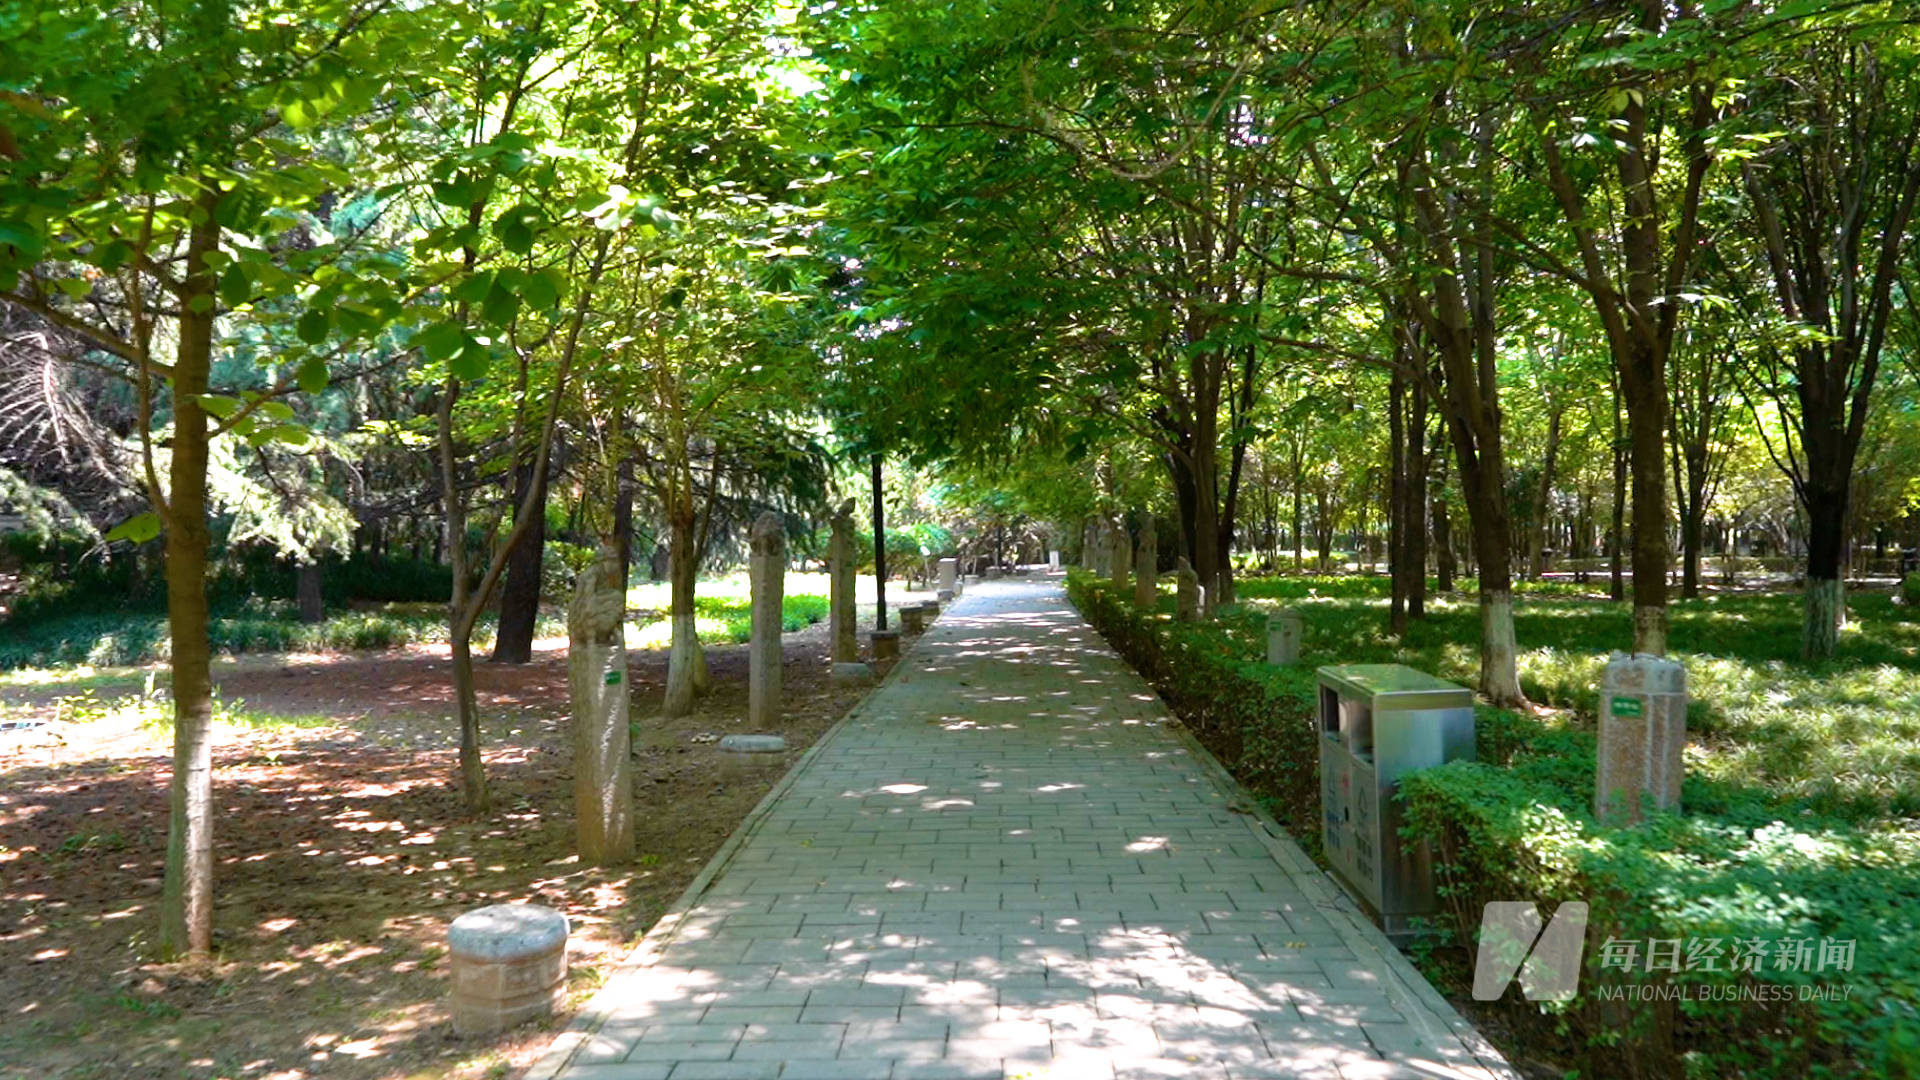 映巷lab〡诗意栖居,绿林长安 西安宝藏公园盘点之沣河森林公园